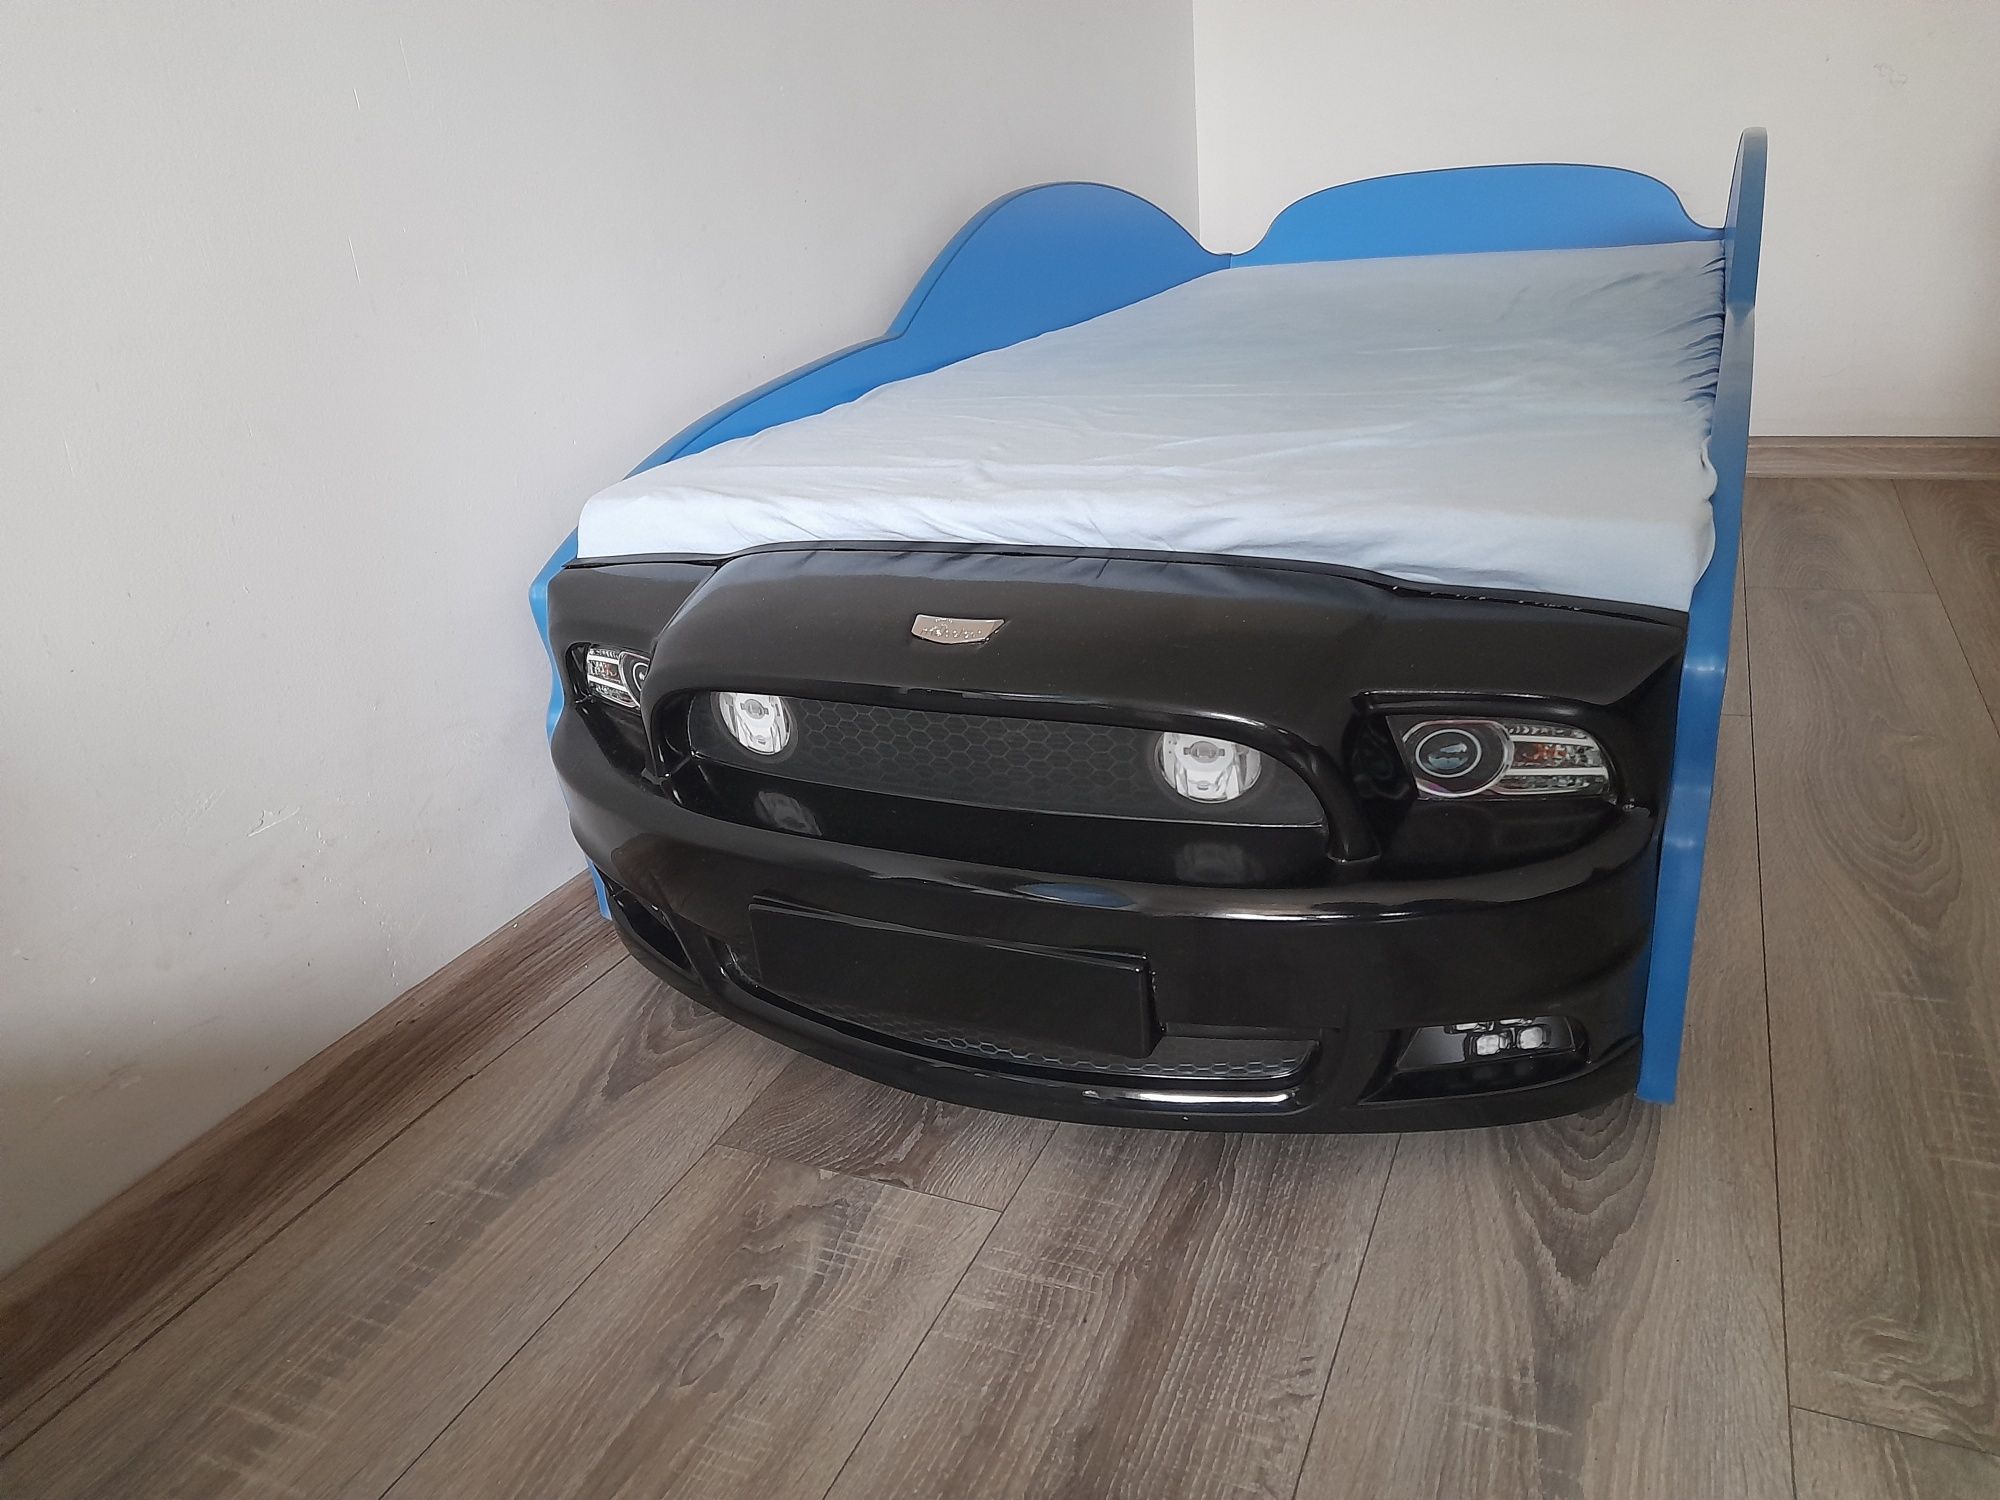 Łóżko wyścigowe samochód Mustang